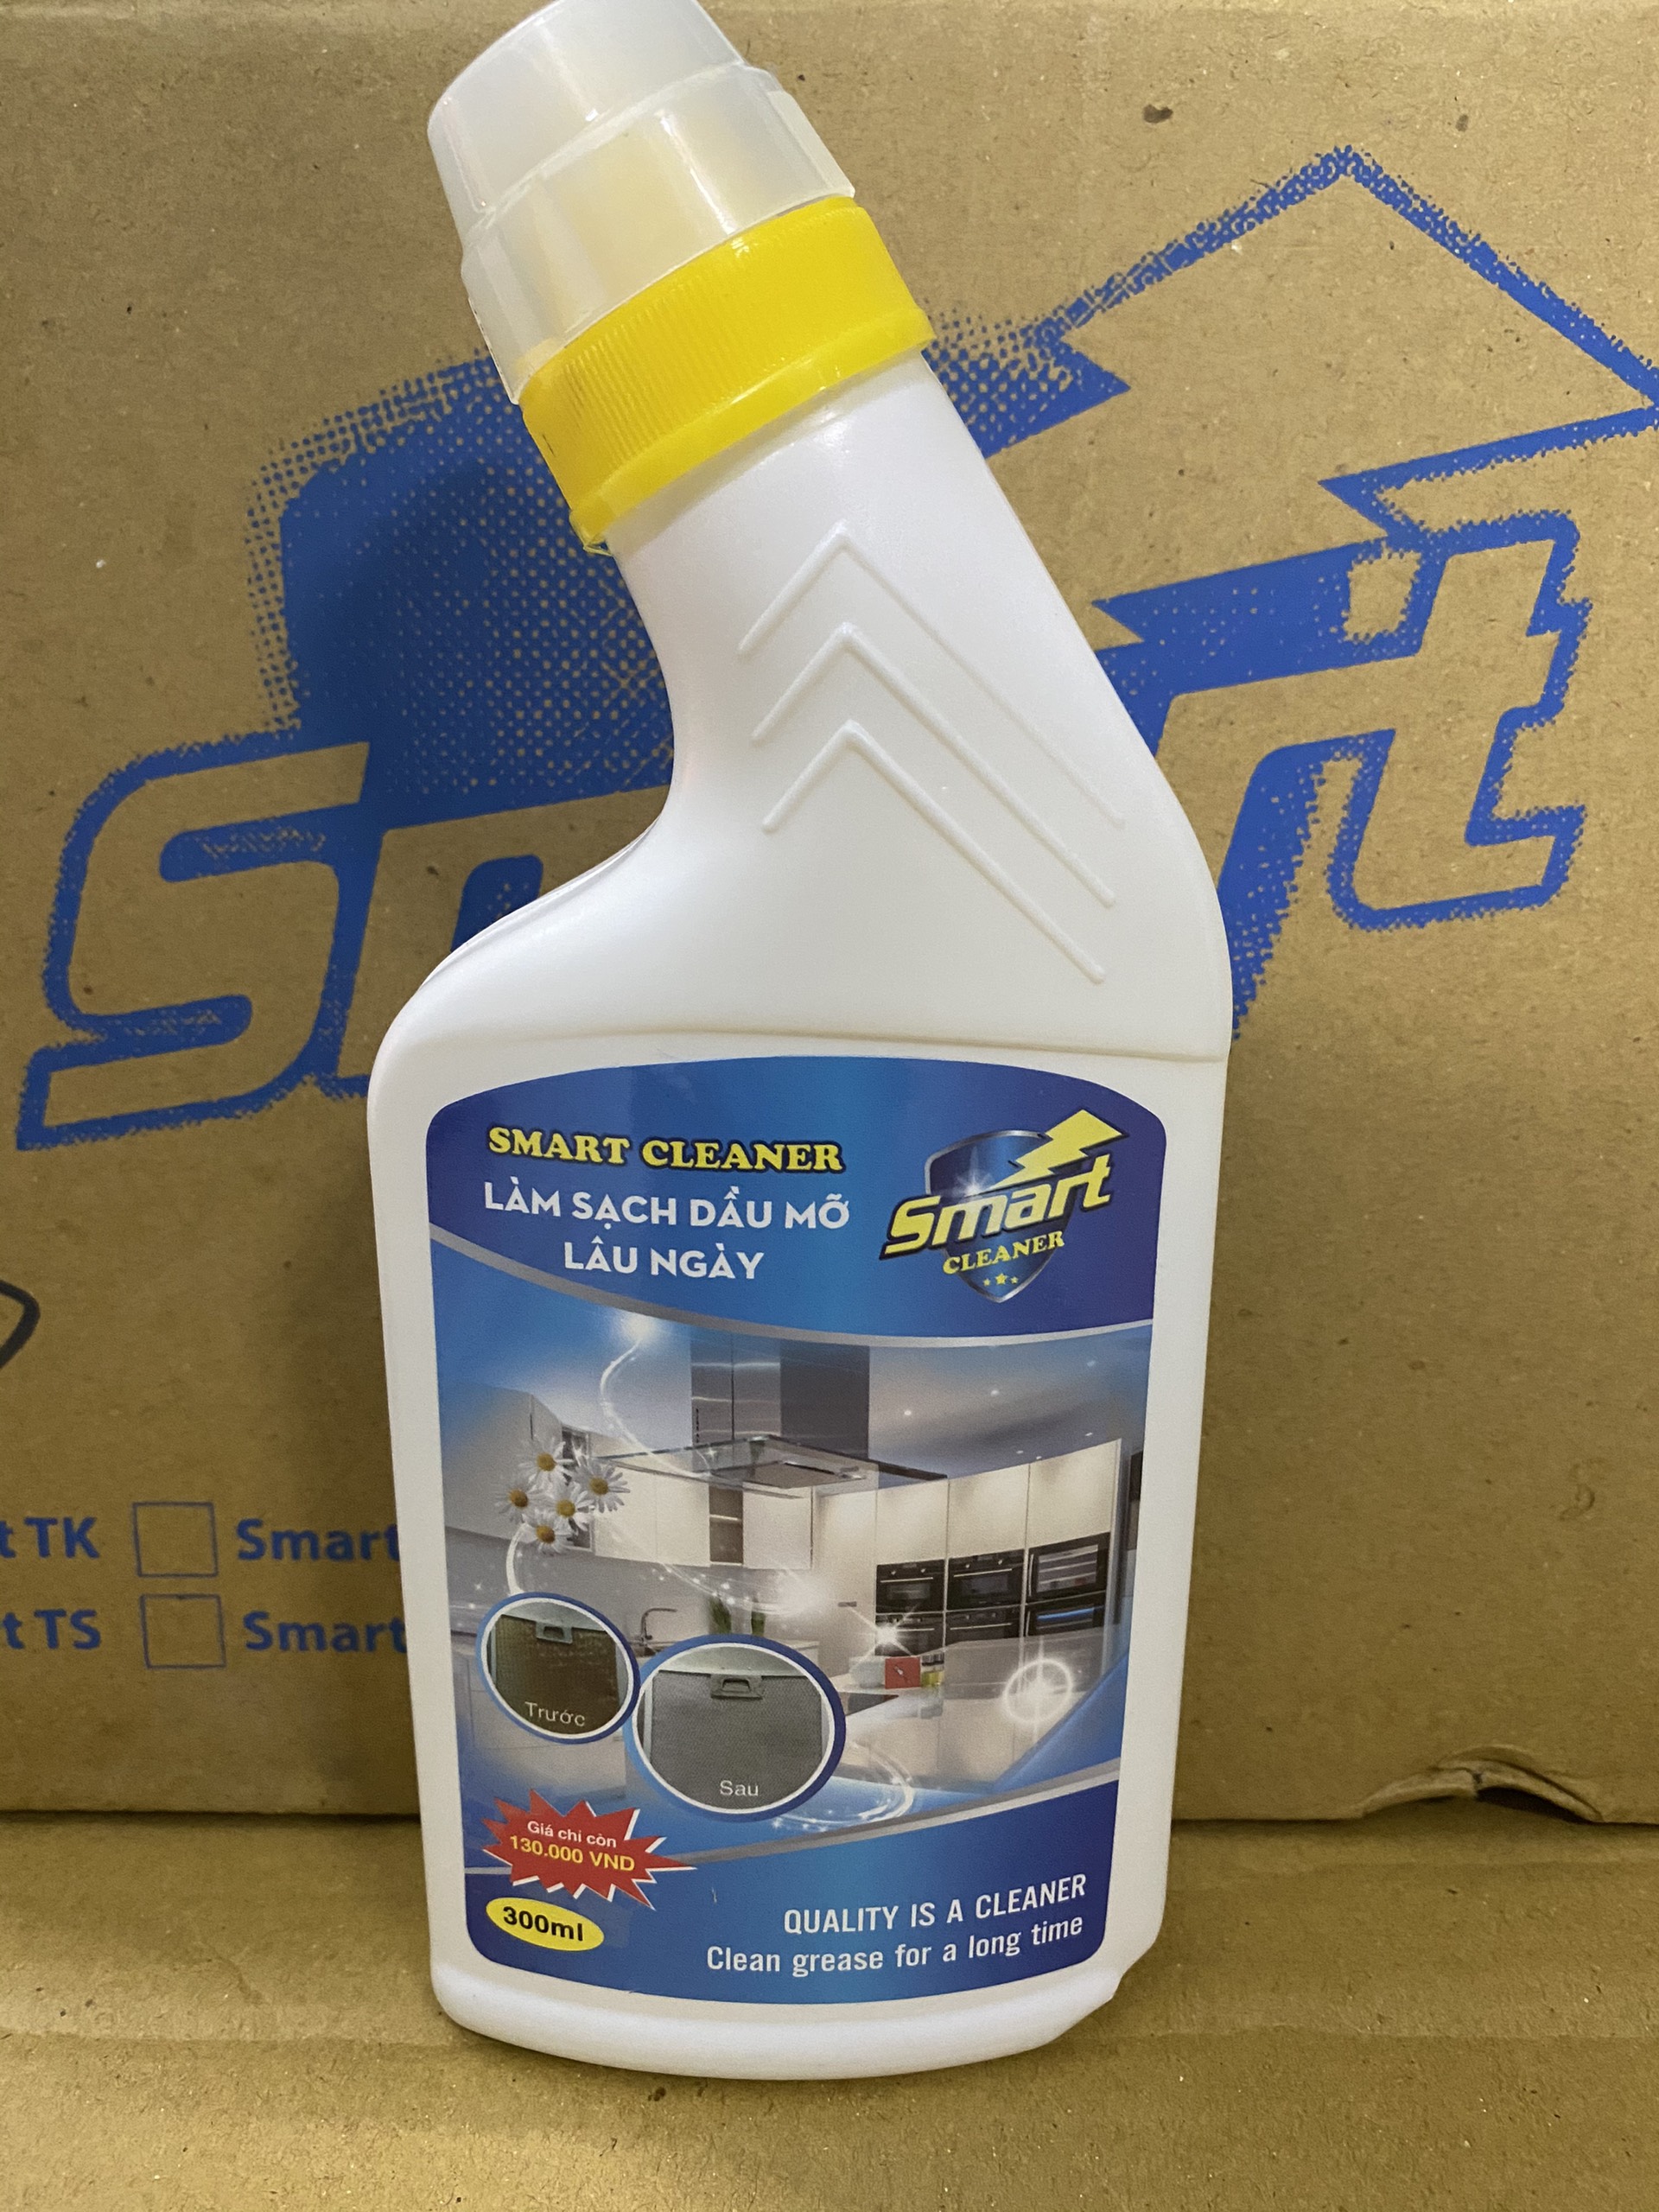 Bộ sản phẩm tẩy rửa gia đình thông minh Smart (300ml) : Smart TC (tẩy inox) - Smart TK (tẩy kính) -  Smart TS (tẩy sứ) - Smart Cleaner (tẩy dầu mỡ) .Hàng chính hãng phân phối độc quyền tại khu vực miền nam